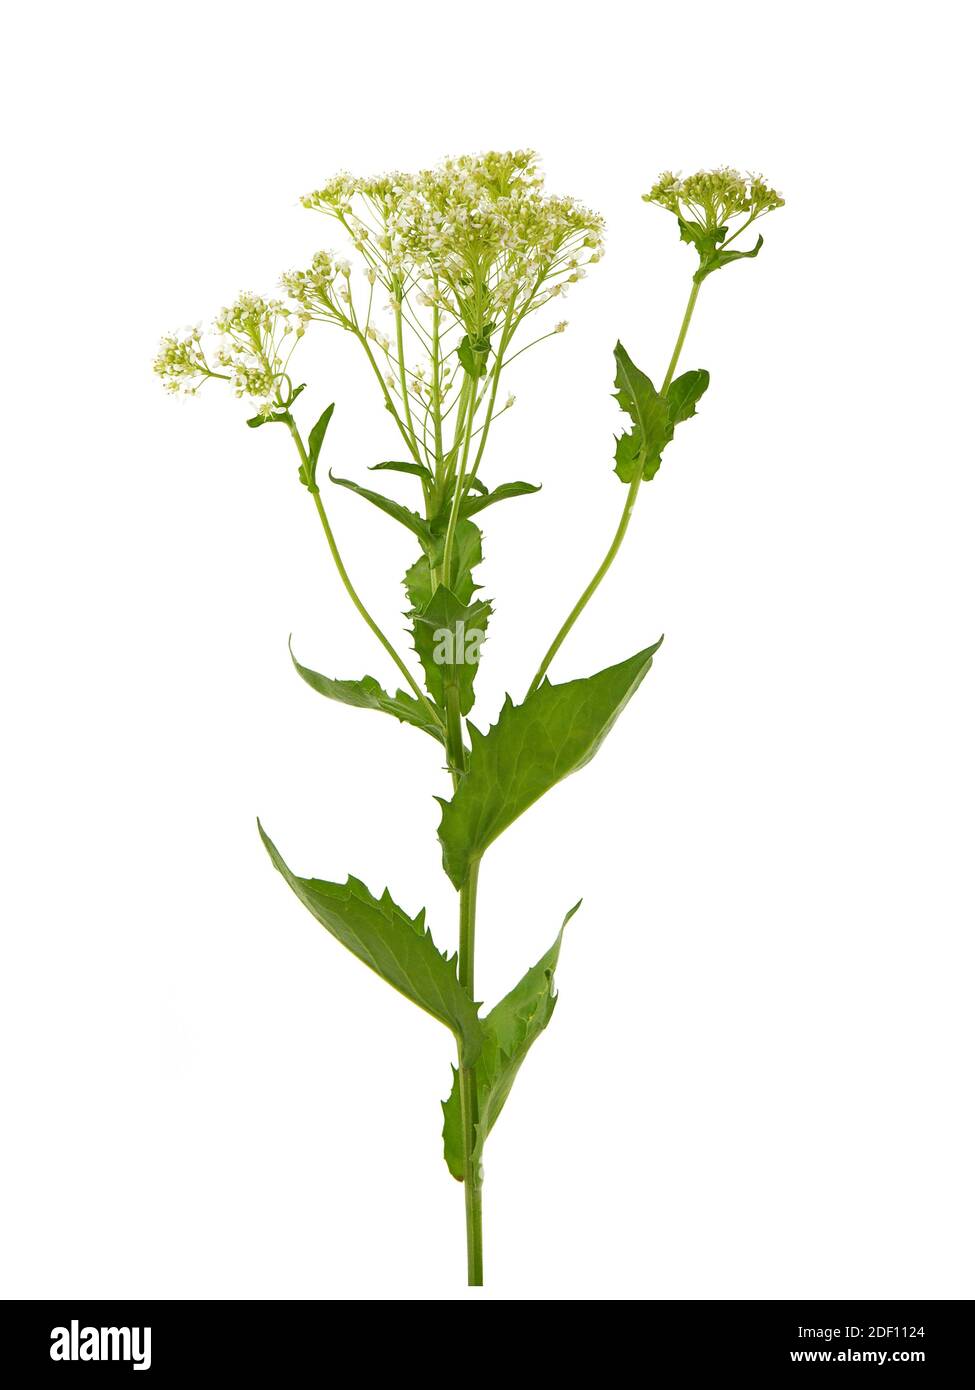 Whitetop or Hoary cress plant isolated on white, Lepidium draba Stock Photo